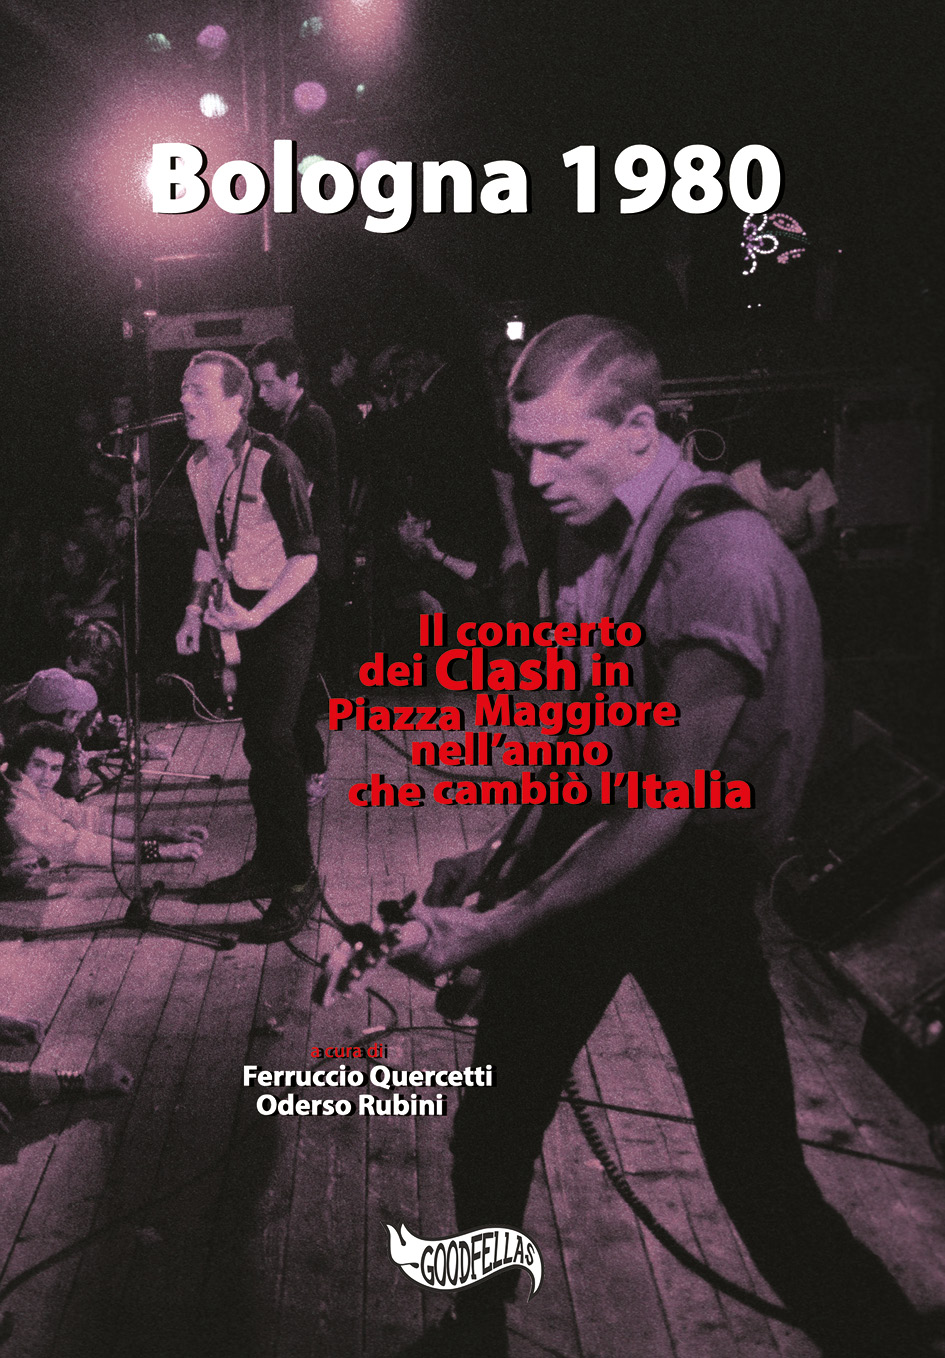 Il libro "Bologna 1980 – Il concerto dei Clash in Piazza Maggiore nell’anno che cambiò l’Italia" (2020)